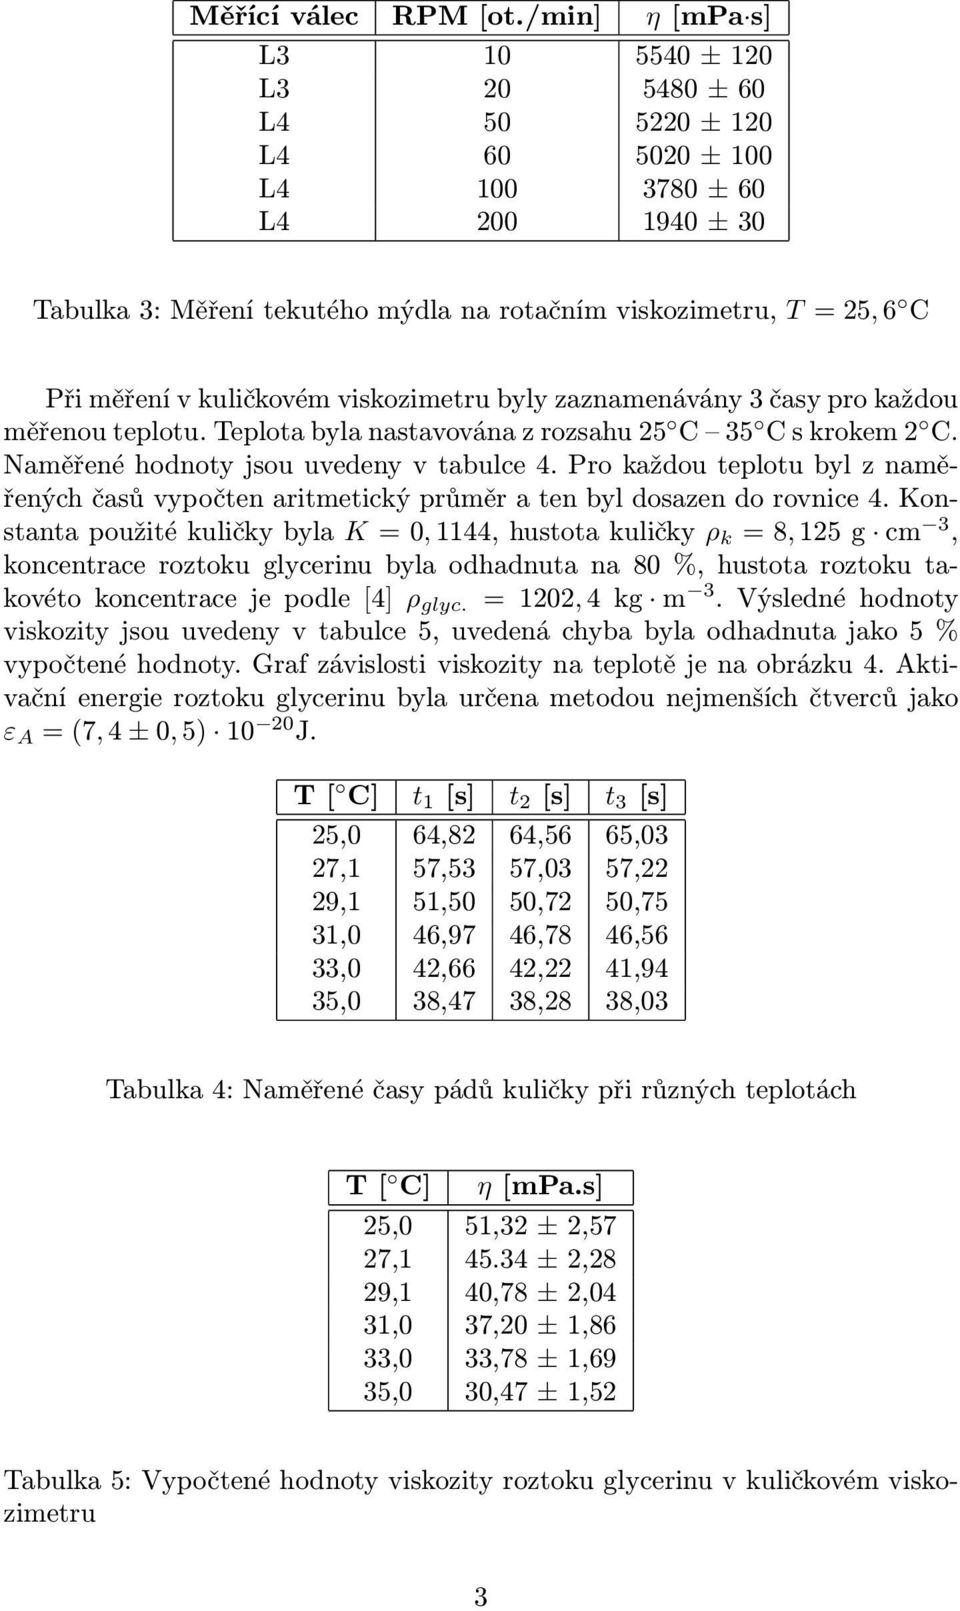 kuličkovém viskozimetru byly zaznamenávány 3 časy pro každou měřenouteplotu.teplotabylanastavovánazrozsahu25 C 35 Cskrokem2 C. Naměřené hodnoty jsou uvedeny v tabulce 4.